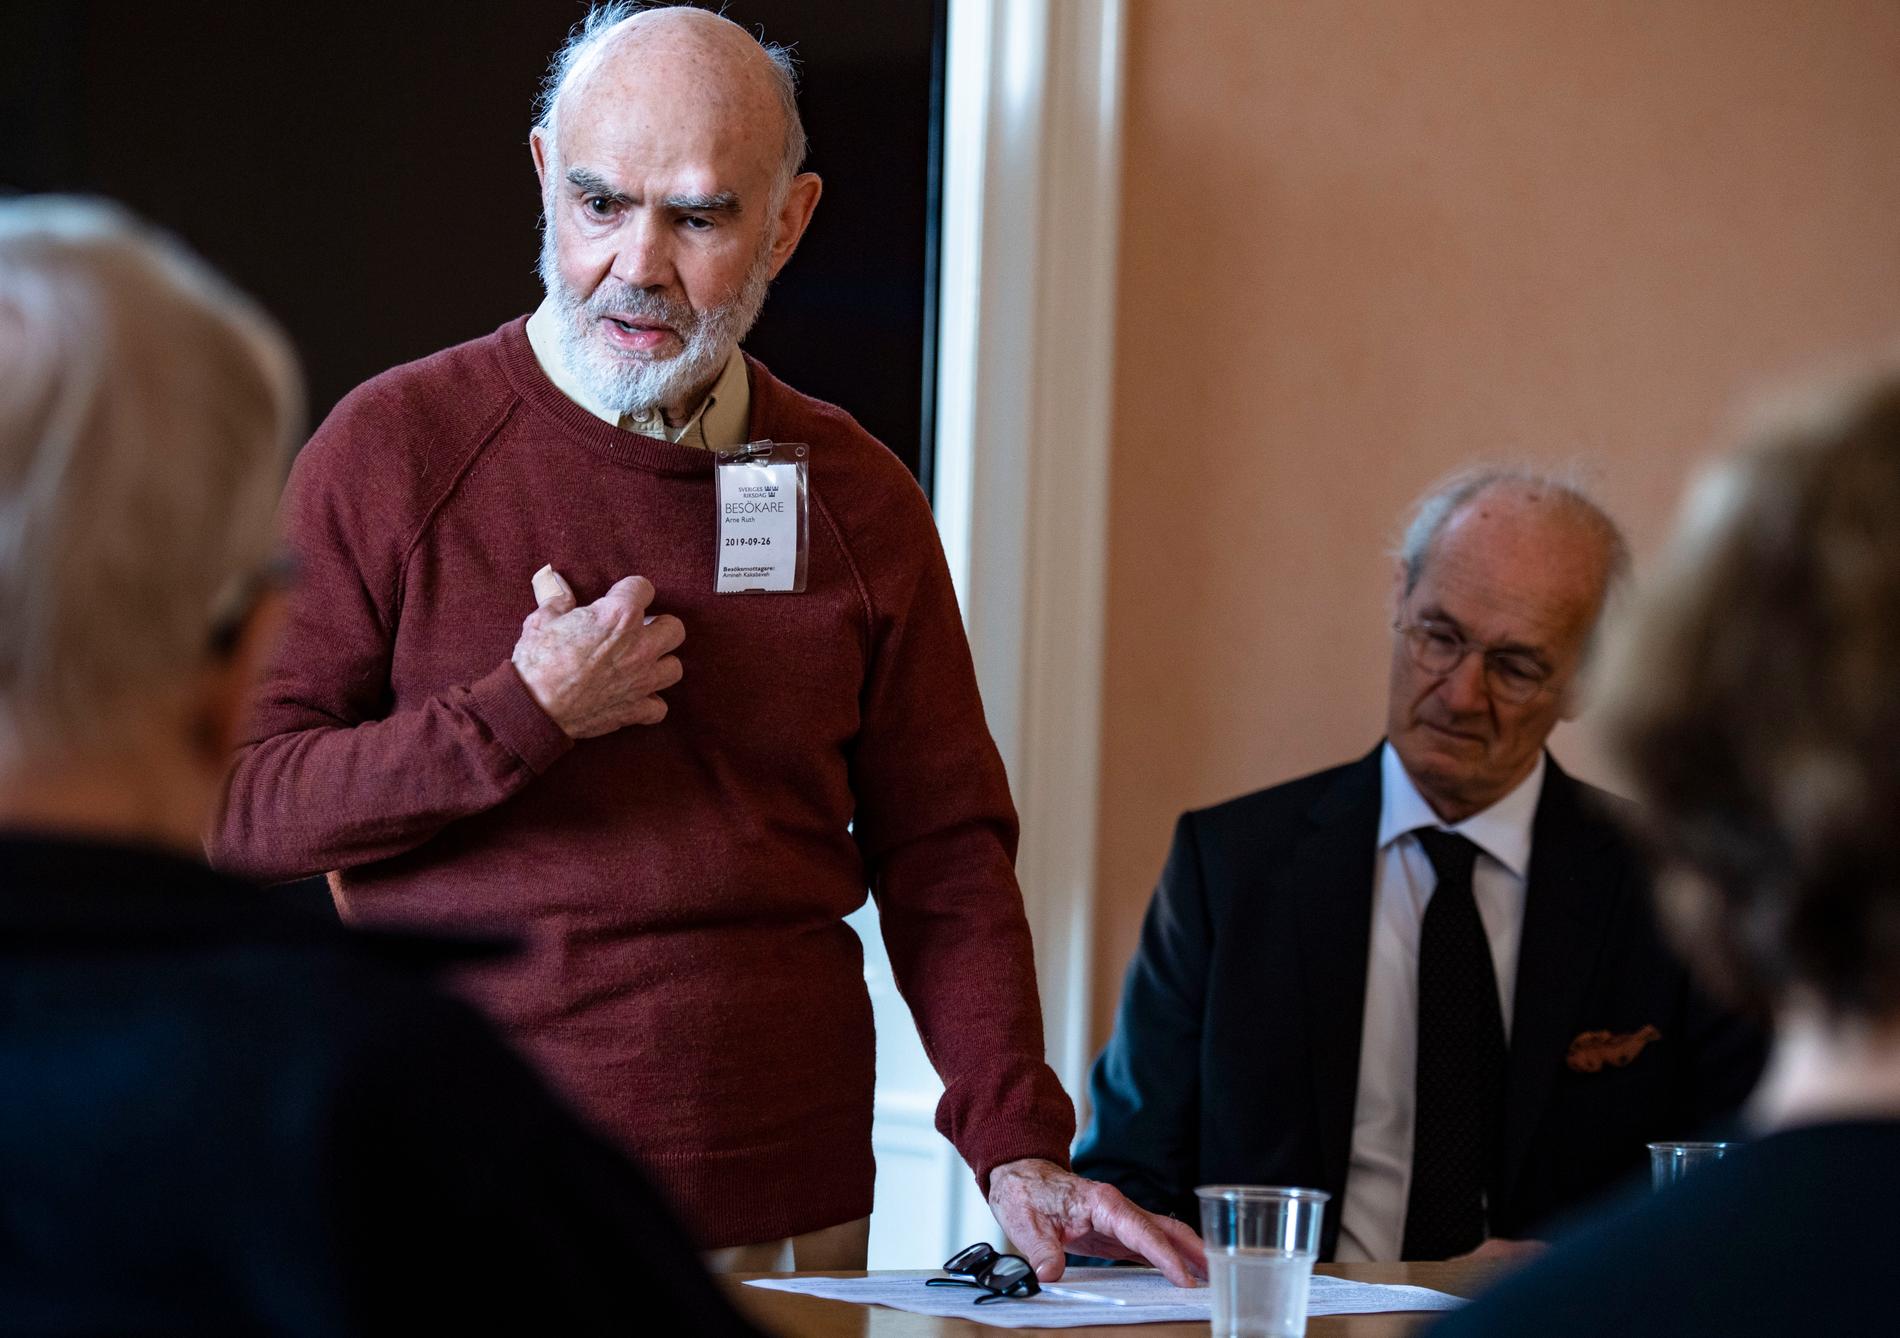 Arne Ruth, med ett förflutet som kulturchef på Dagens Nyheter och Expressen, höll ett kort anförande.